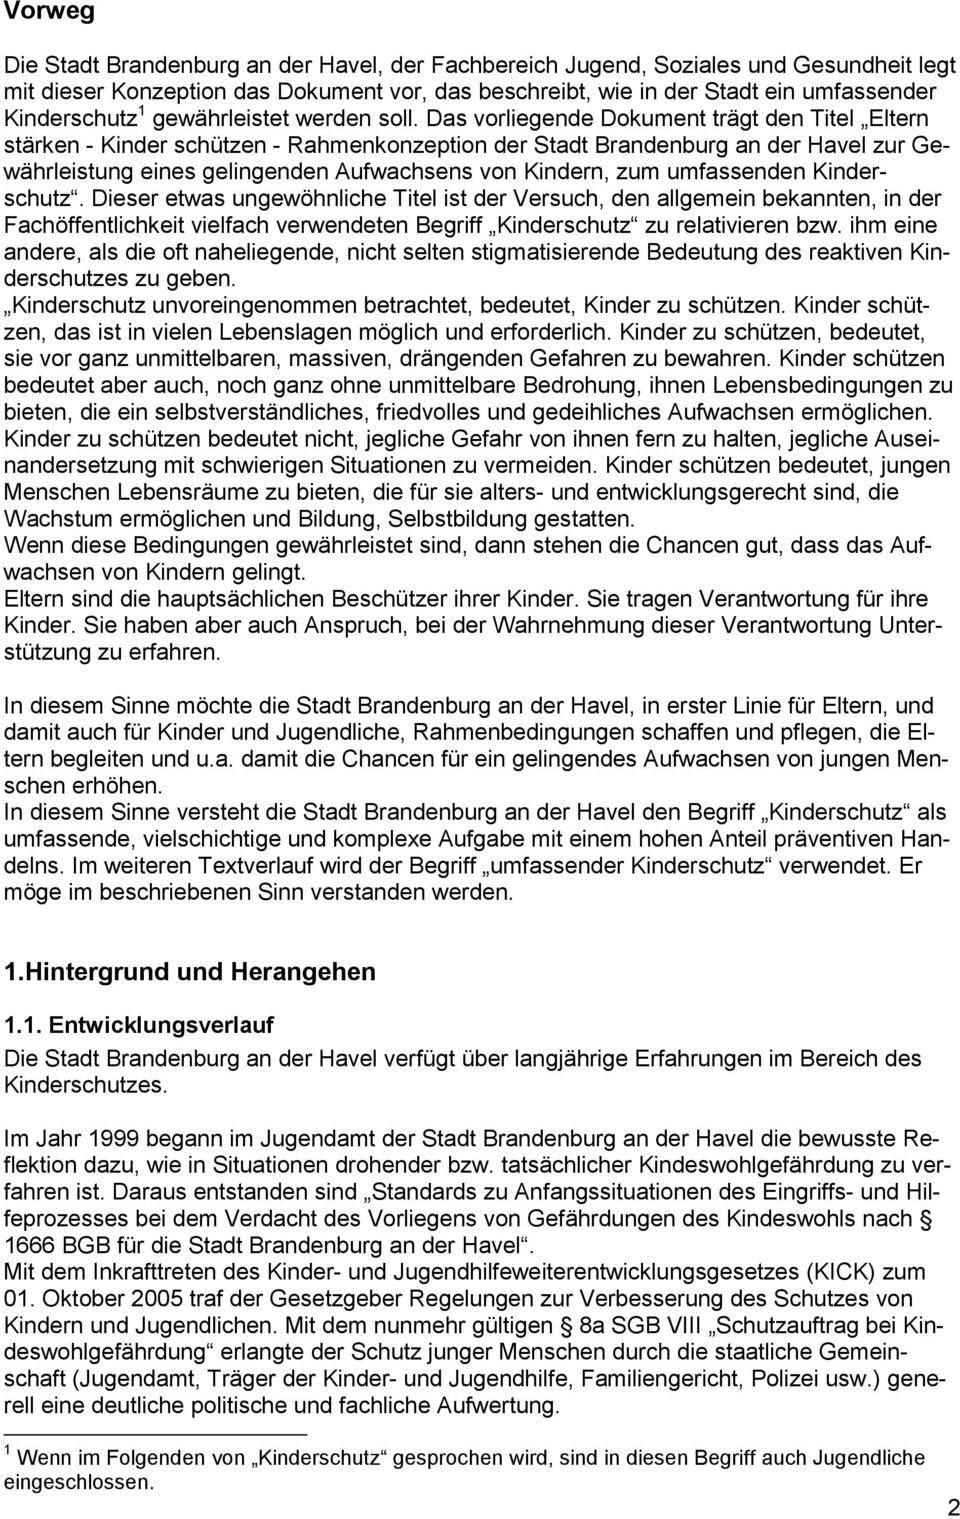 Das vorliegende Dokument trägt den Titel Eltern stärken - Kinder schützen - Rahmenkonzeption der Stadt Brandenburg an der Havel zur Gewährleistung eines gelingenden Aufwachsens von Kindern, zum